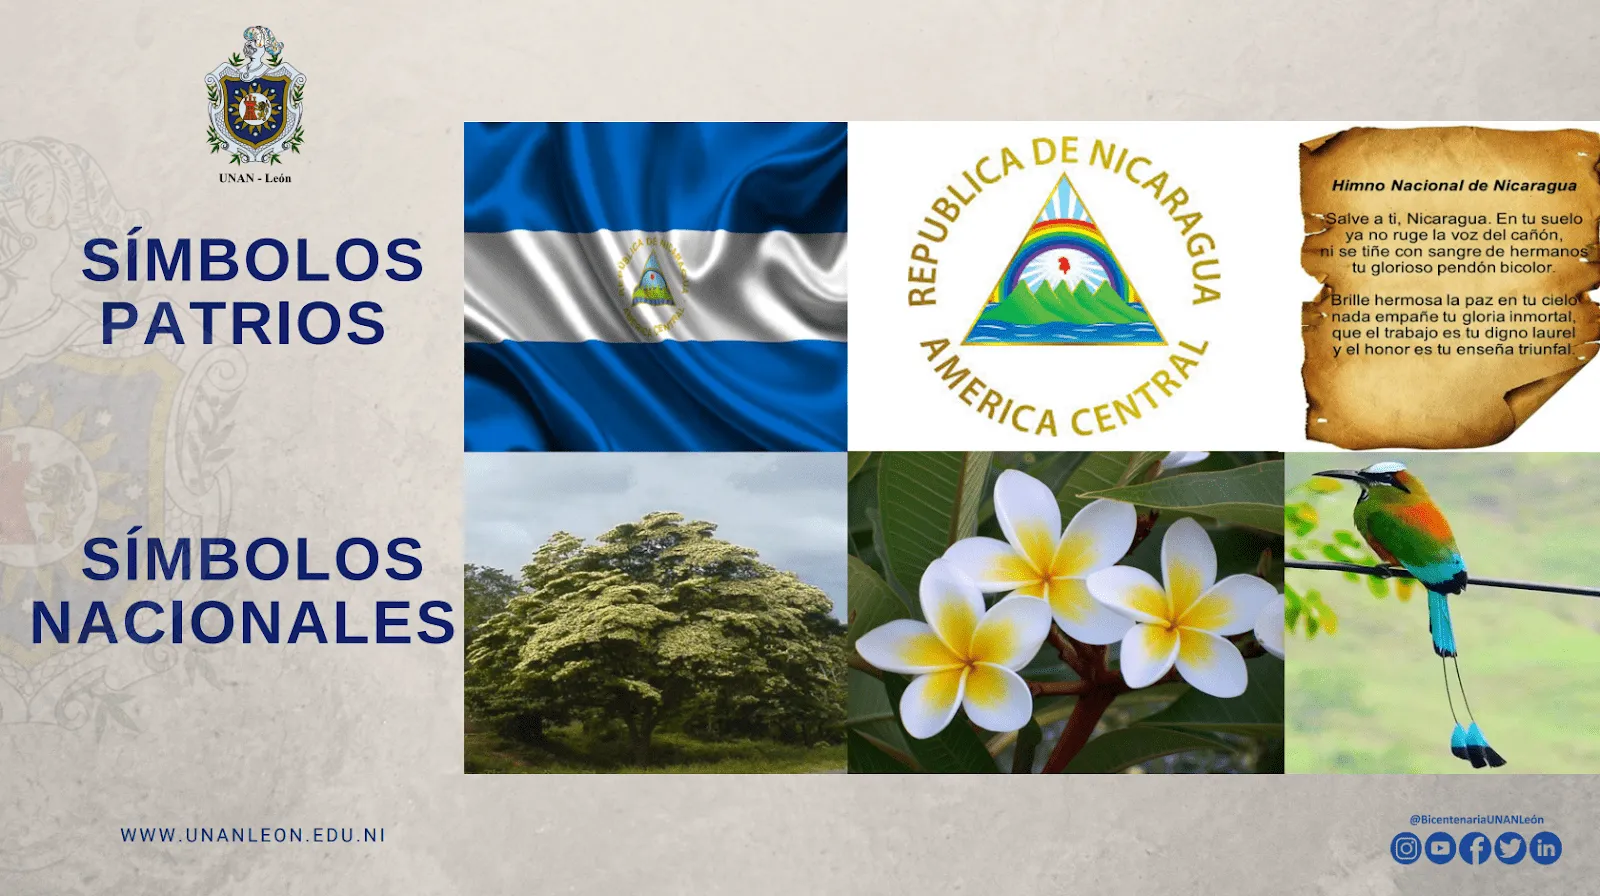 NICARAGUA - NUESTROS SÍMBOLOS PATRIOS Y NACIONALES